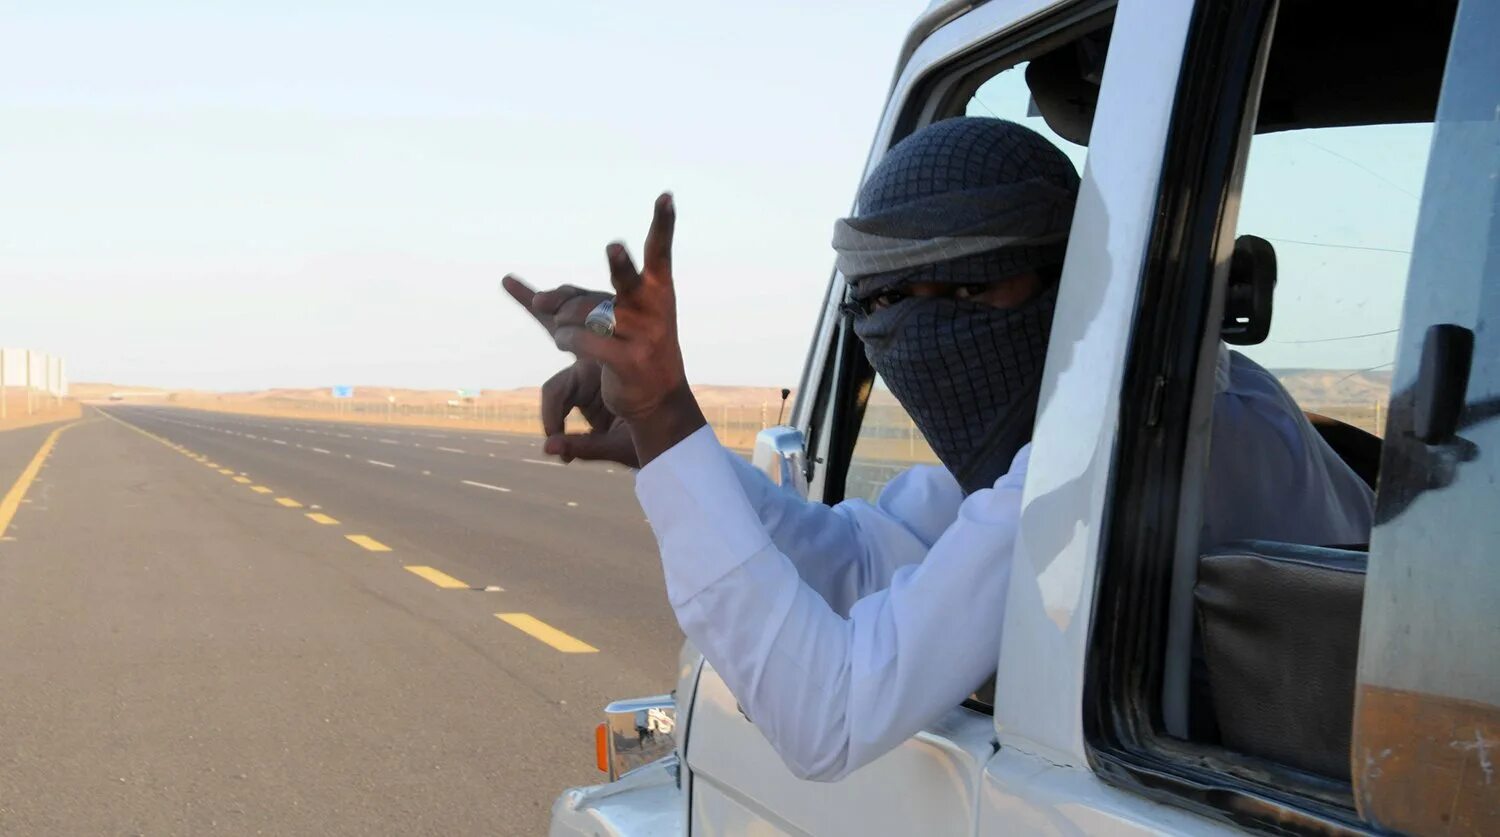 Арабские машины. Арабы Саудовской Аравии. Арабы на тачках. Машина в пустыне и араб. Саудовская аравия открыла границы